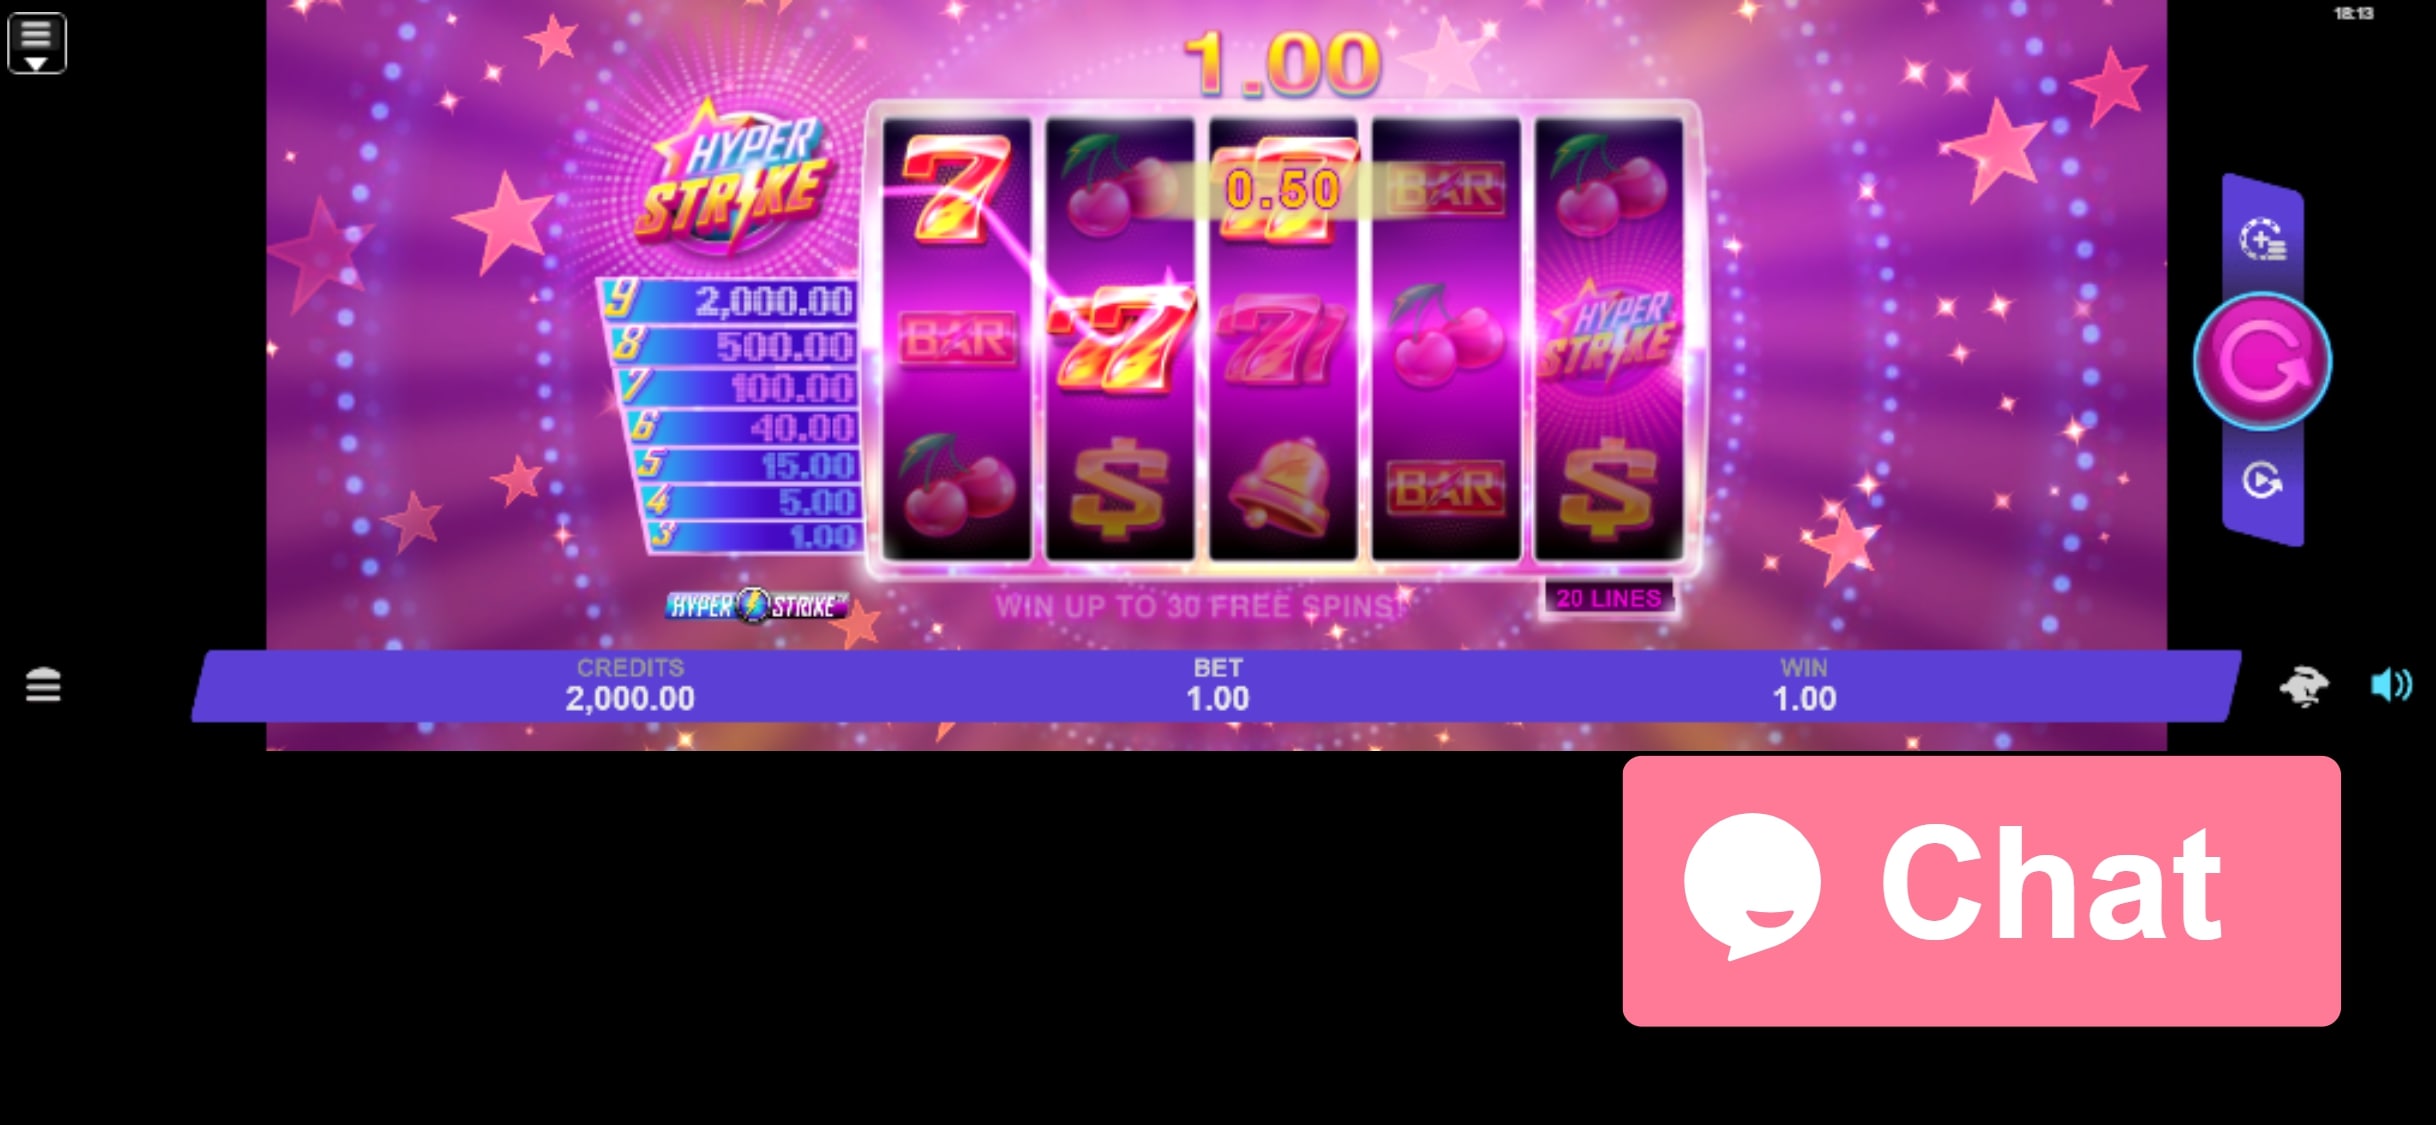 SlottoJAM Casino Mobile Slot Games Review